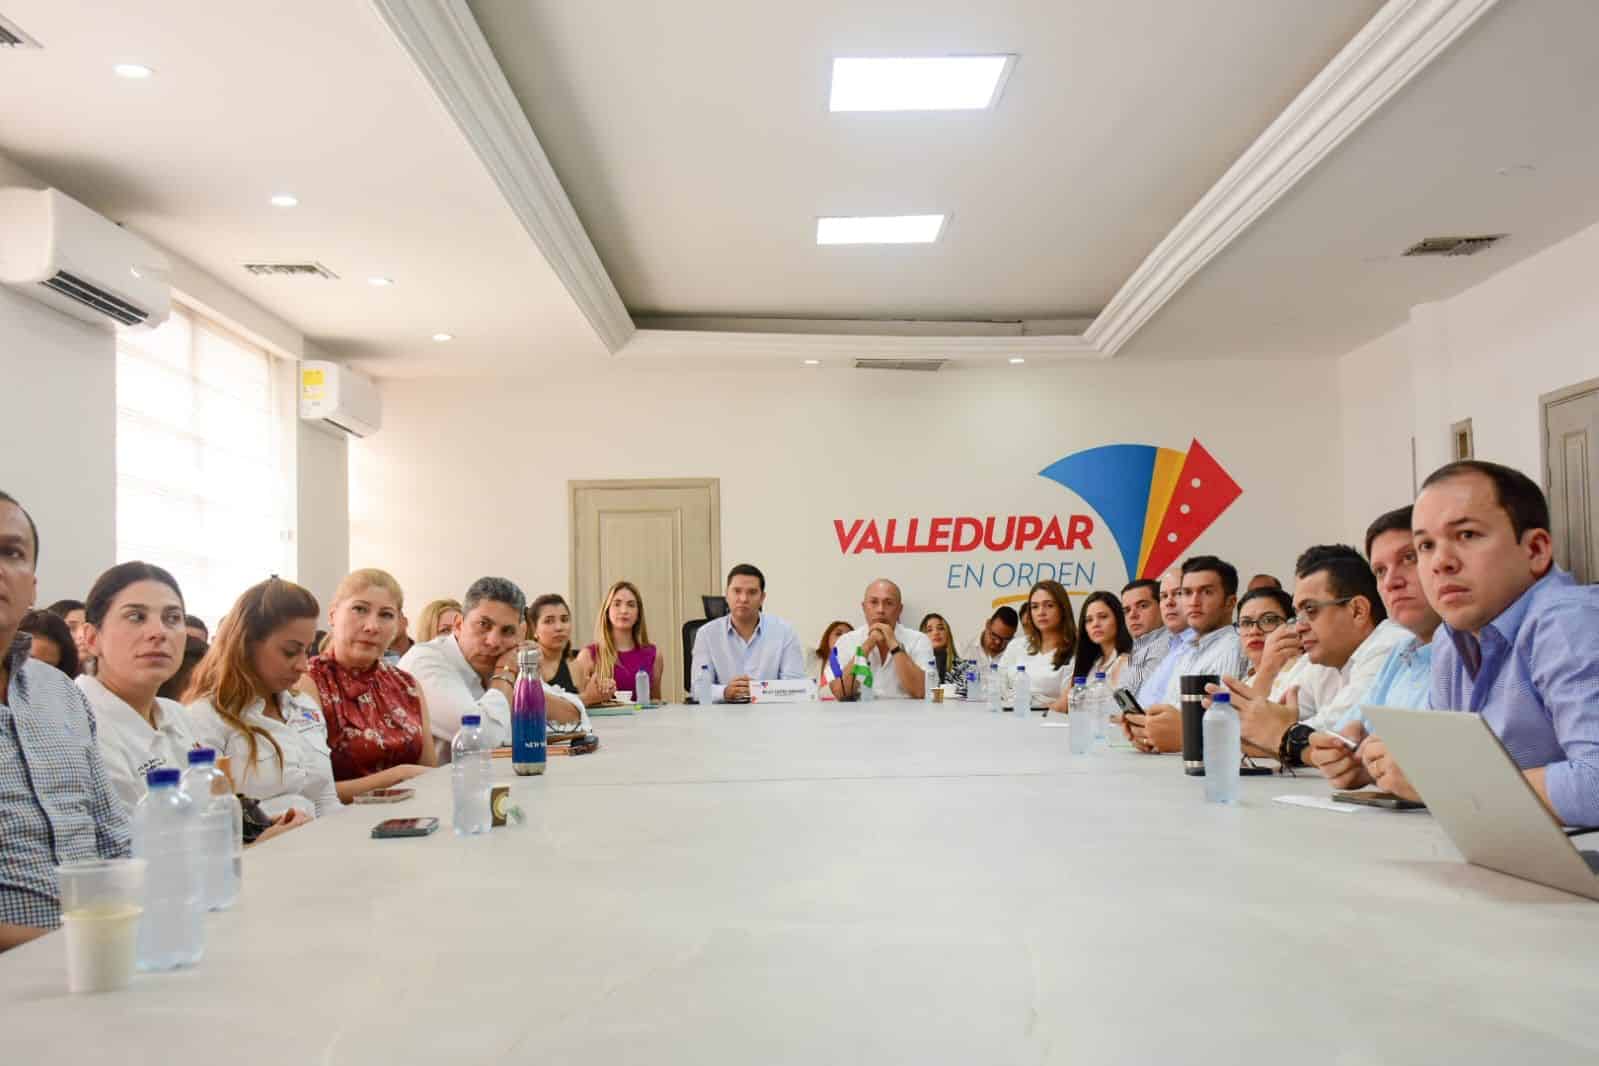 “Llegamos a construir y a trabajar por Valledupar”: Ernesto Orozco durante primer comité de empalme con gobierno de Mello Castro